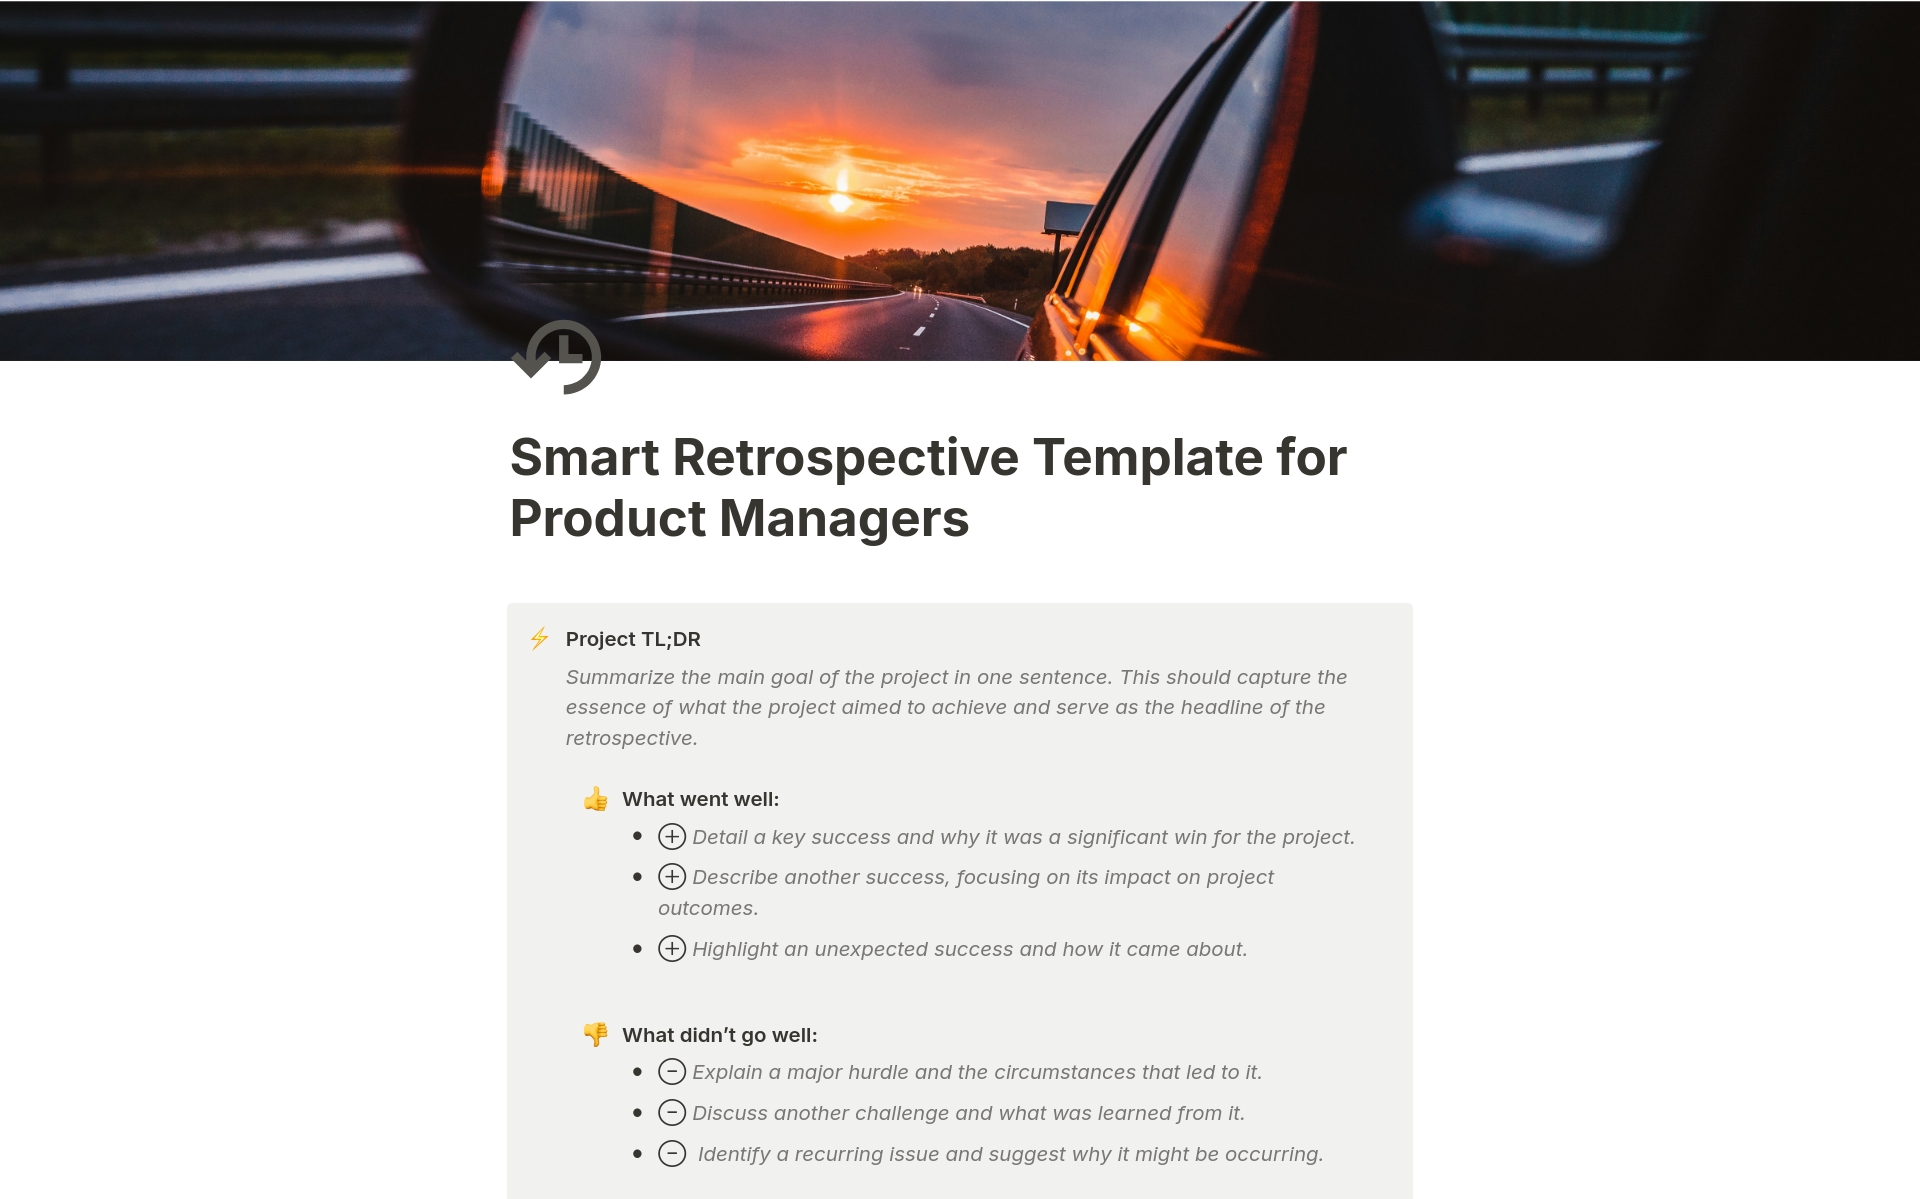 Uma prévia do modelo para Smart Retrospective Framework for Product Managers